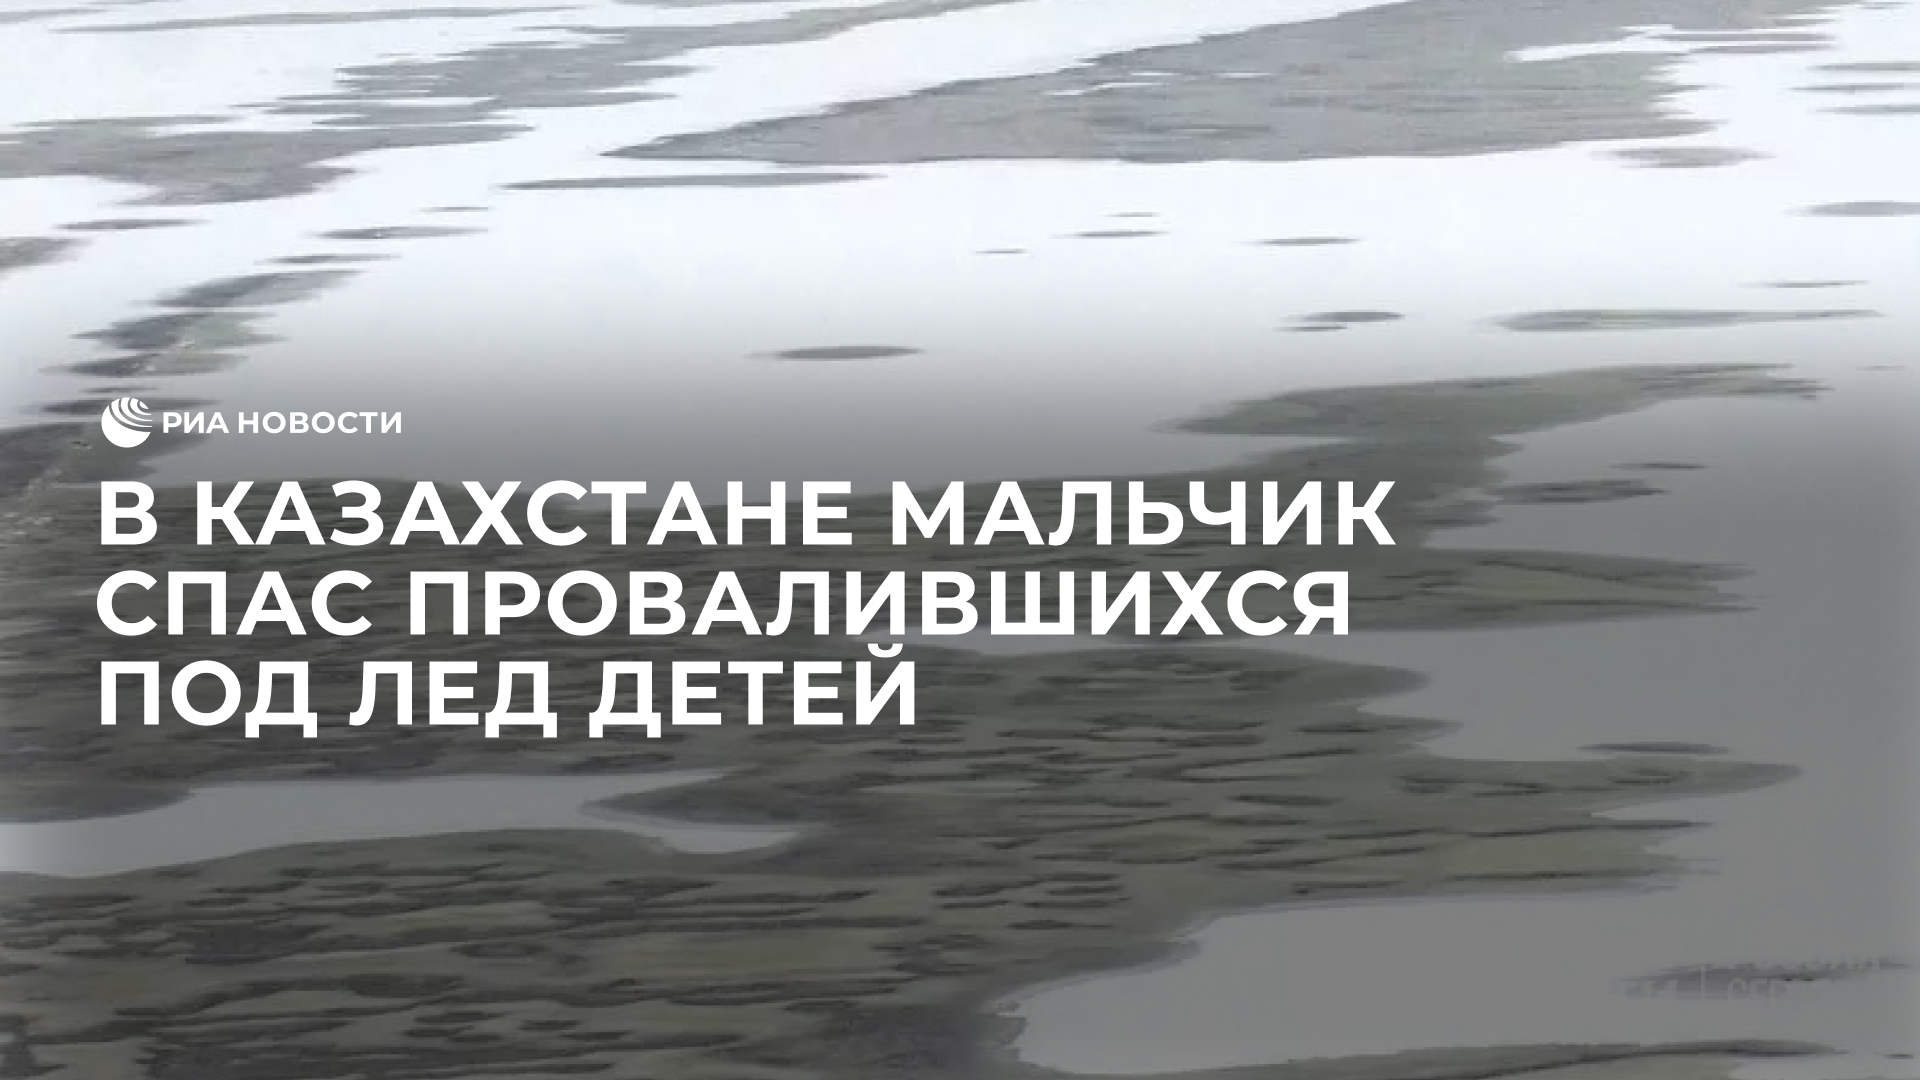 В Казахстане восьмилетний мальчик спас провалившихся под лед детей